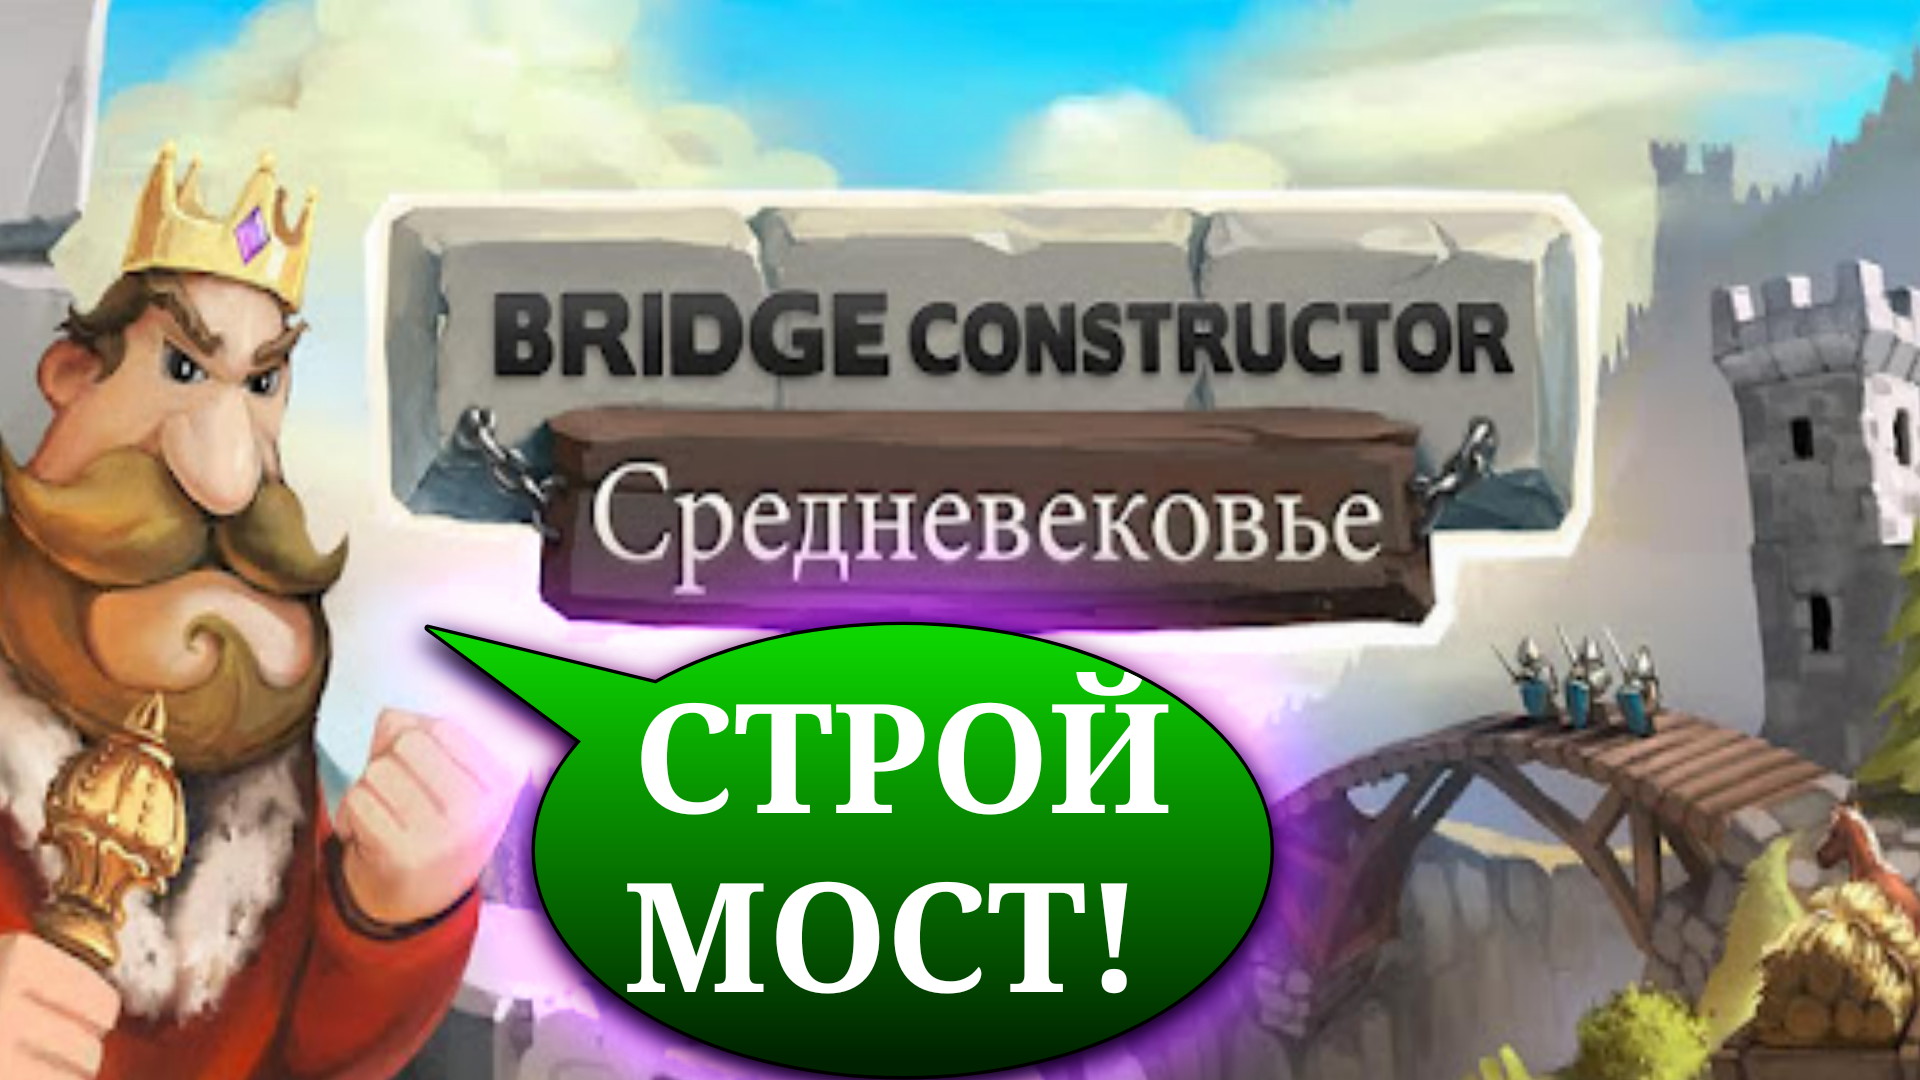 Bridge constructor medieval steam фото 71